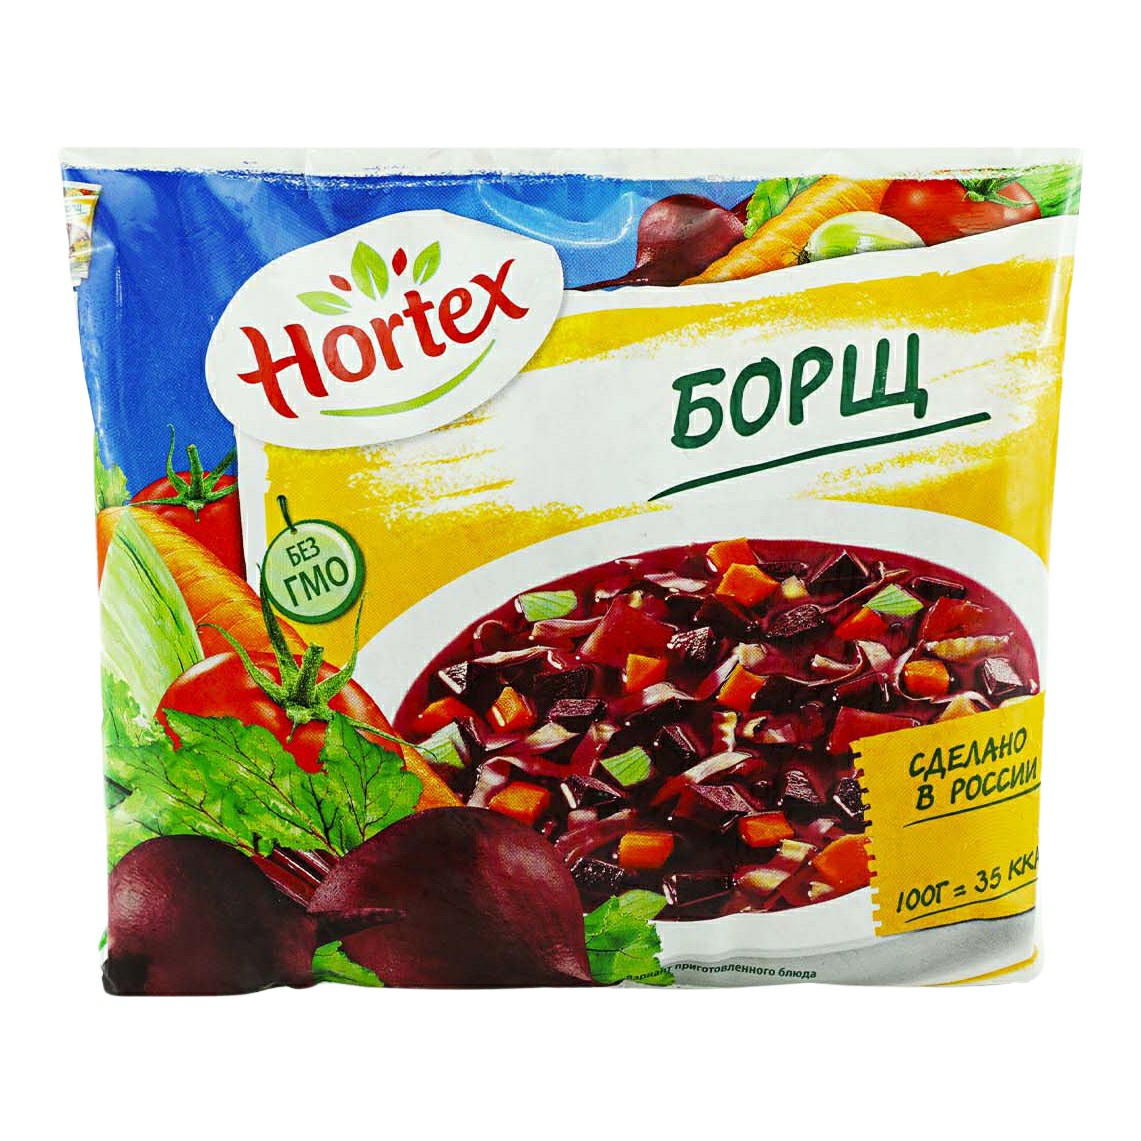 Смесь овощная Hortex Борщ замороженная 400 г